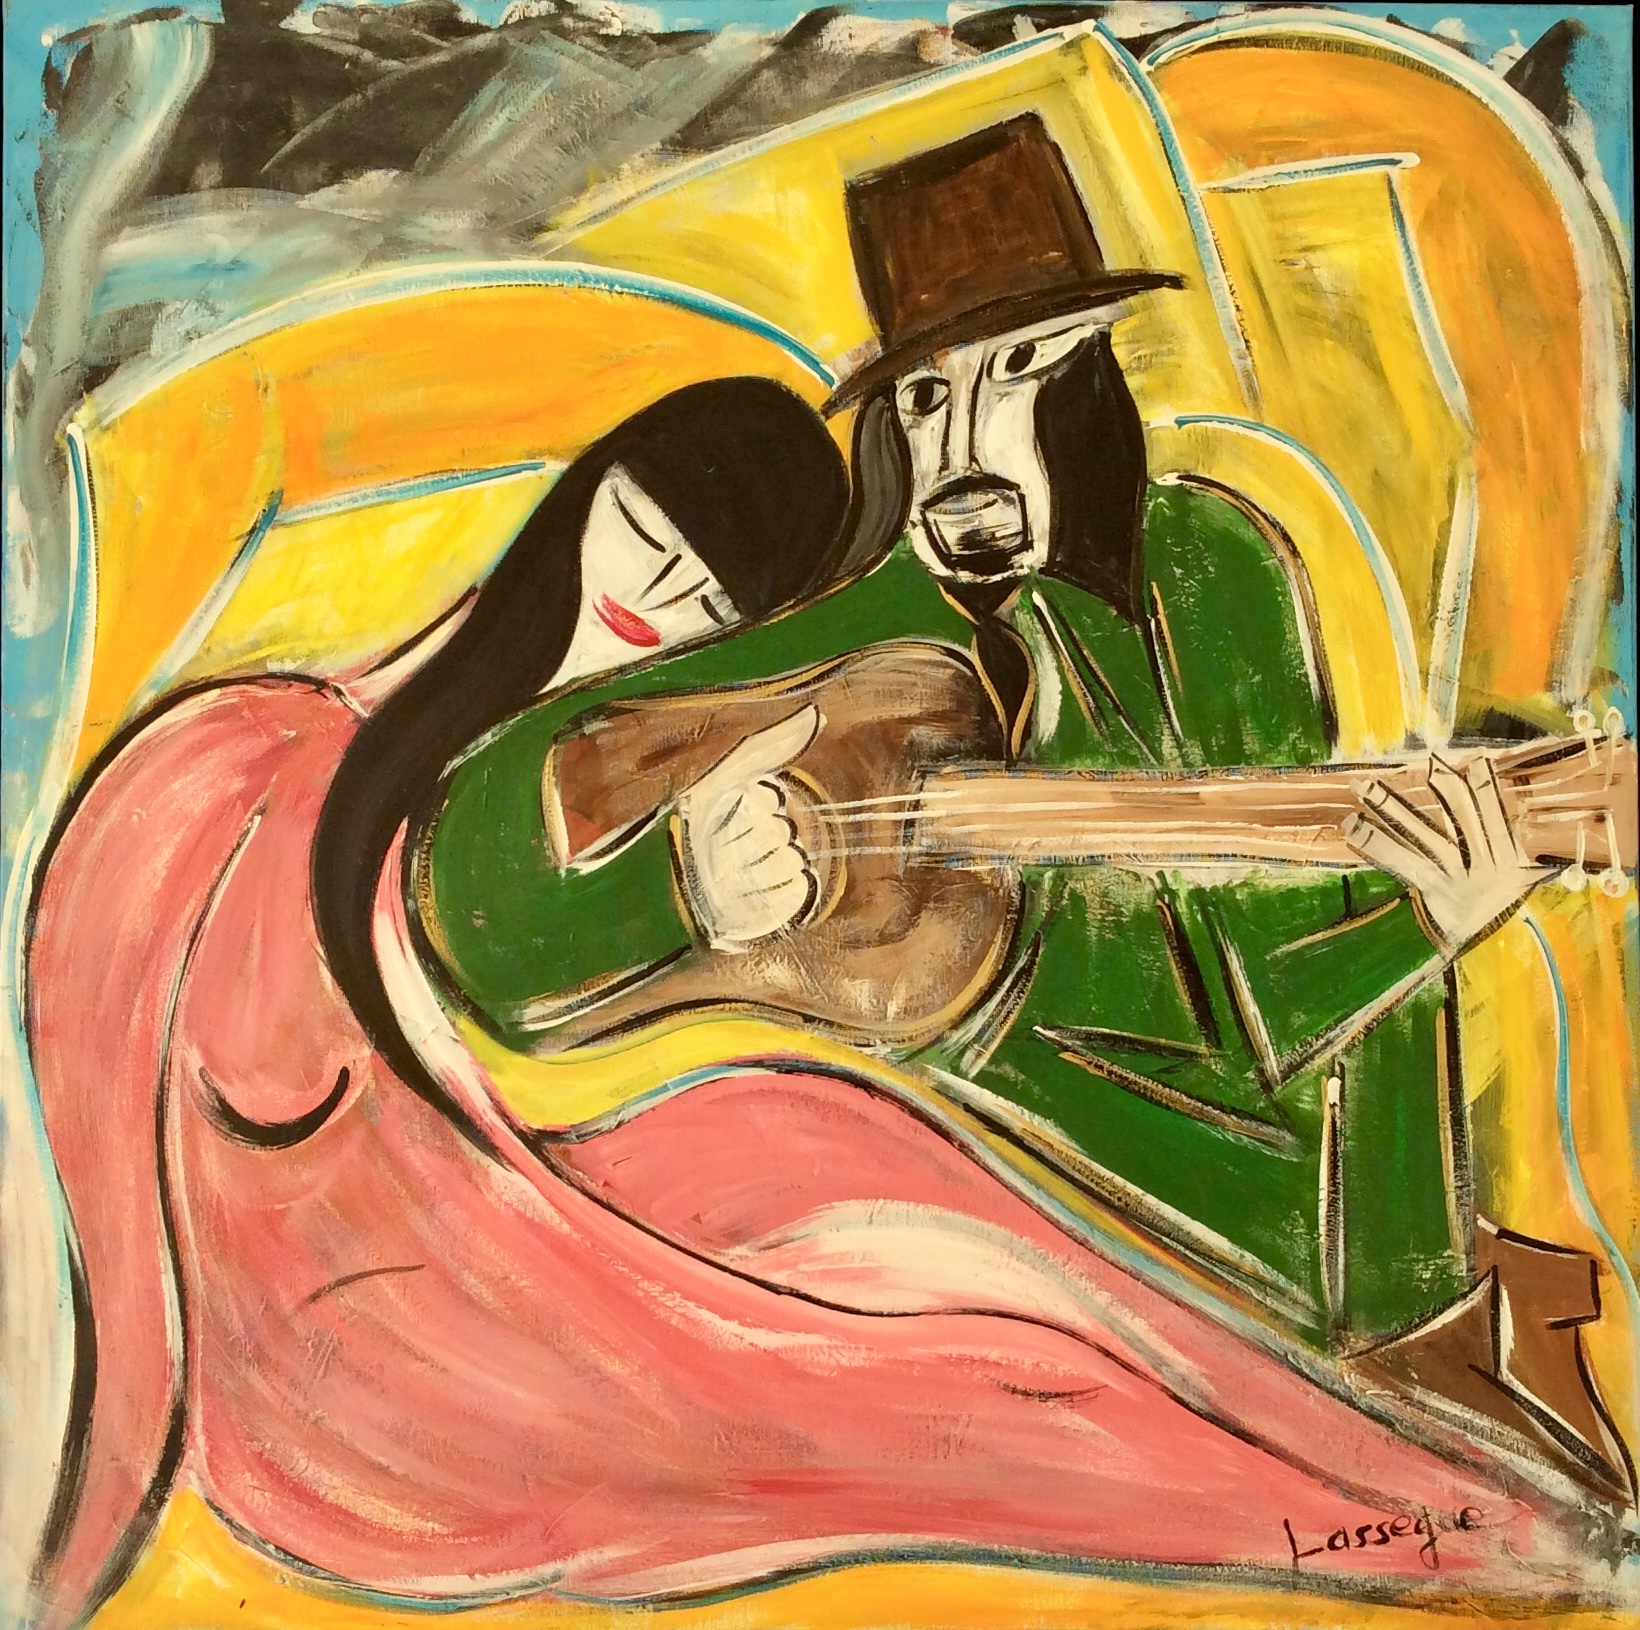 Manitas and His Gypsy Woman